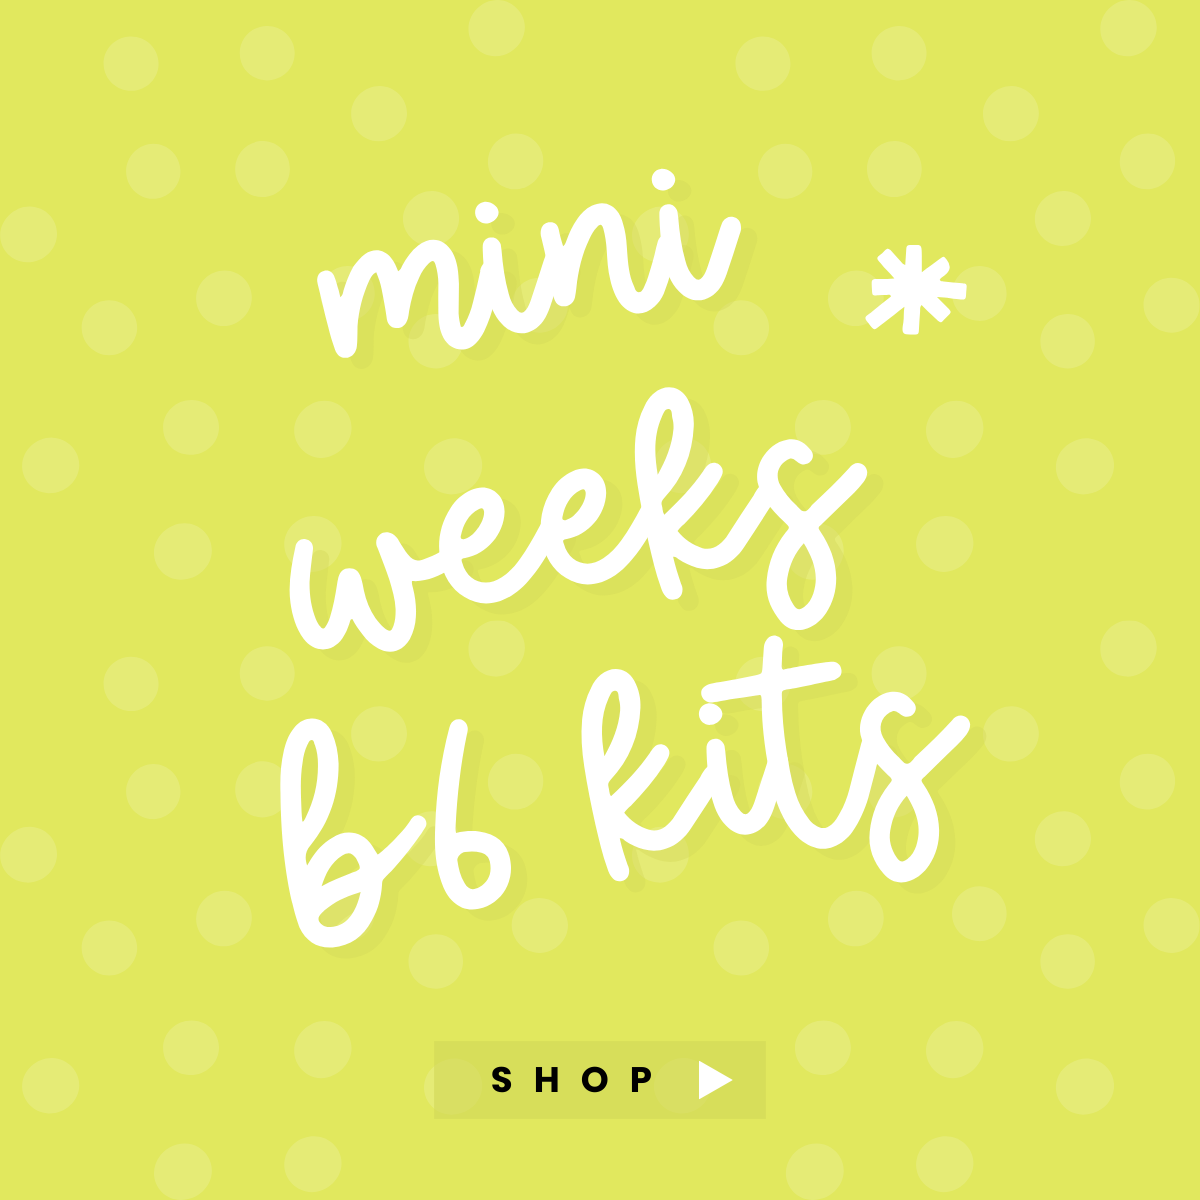 Mini/Weeks/B6 Kits